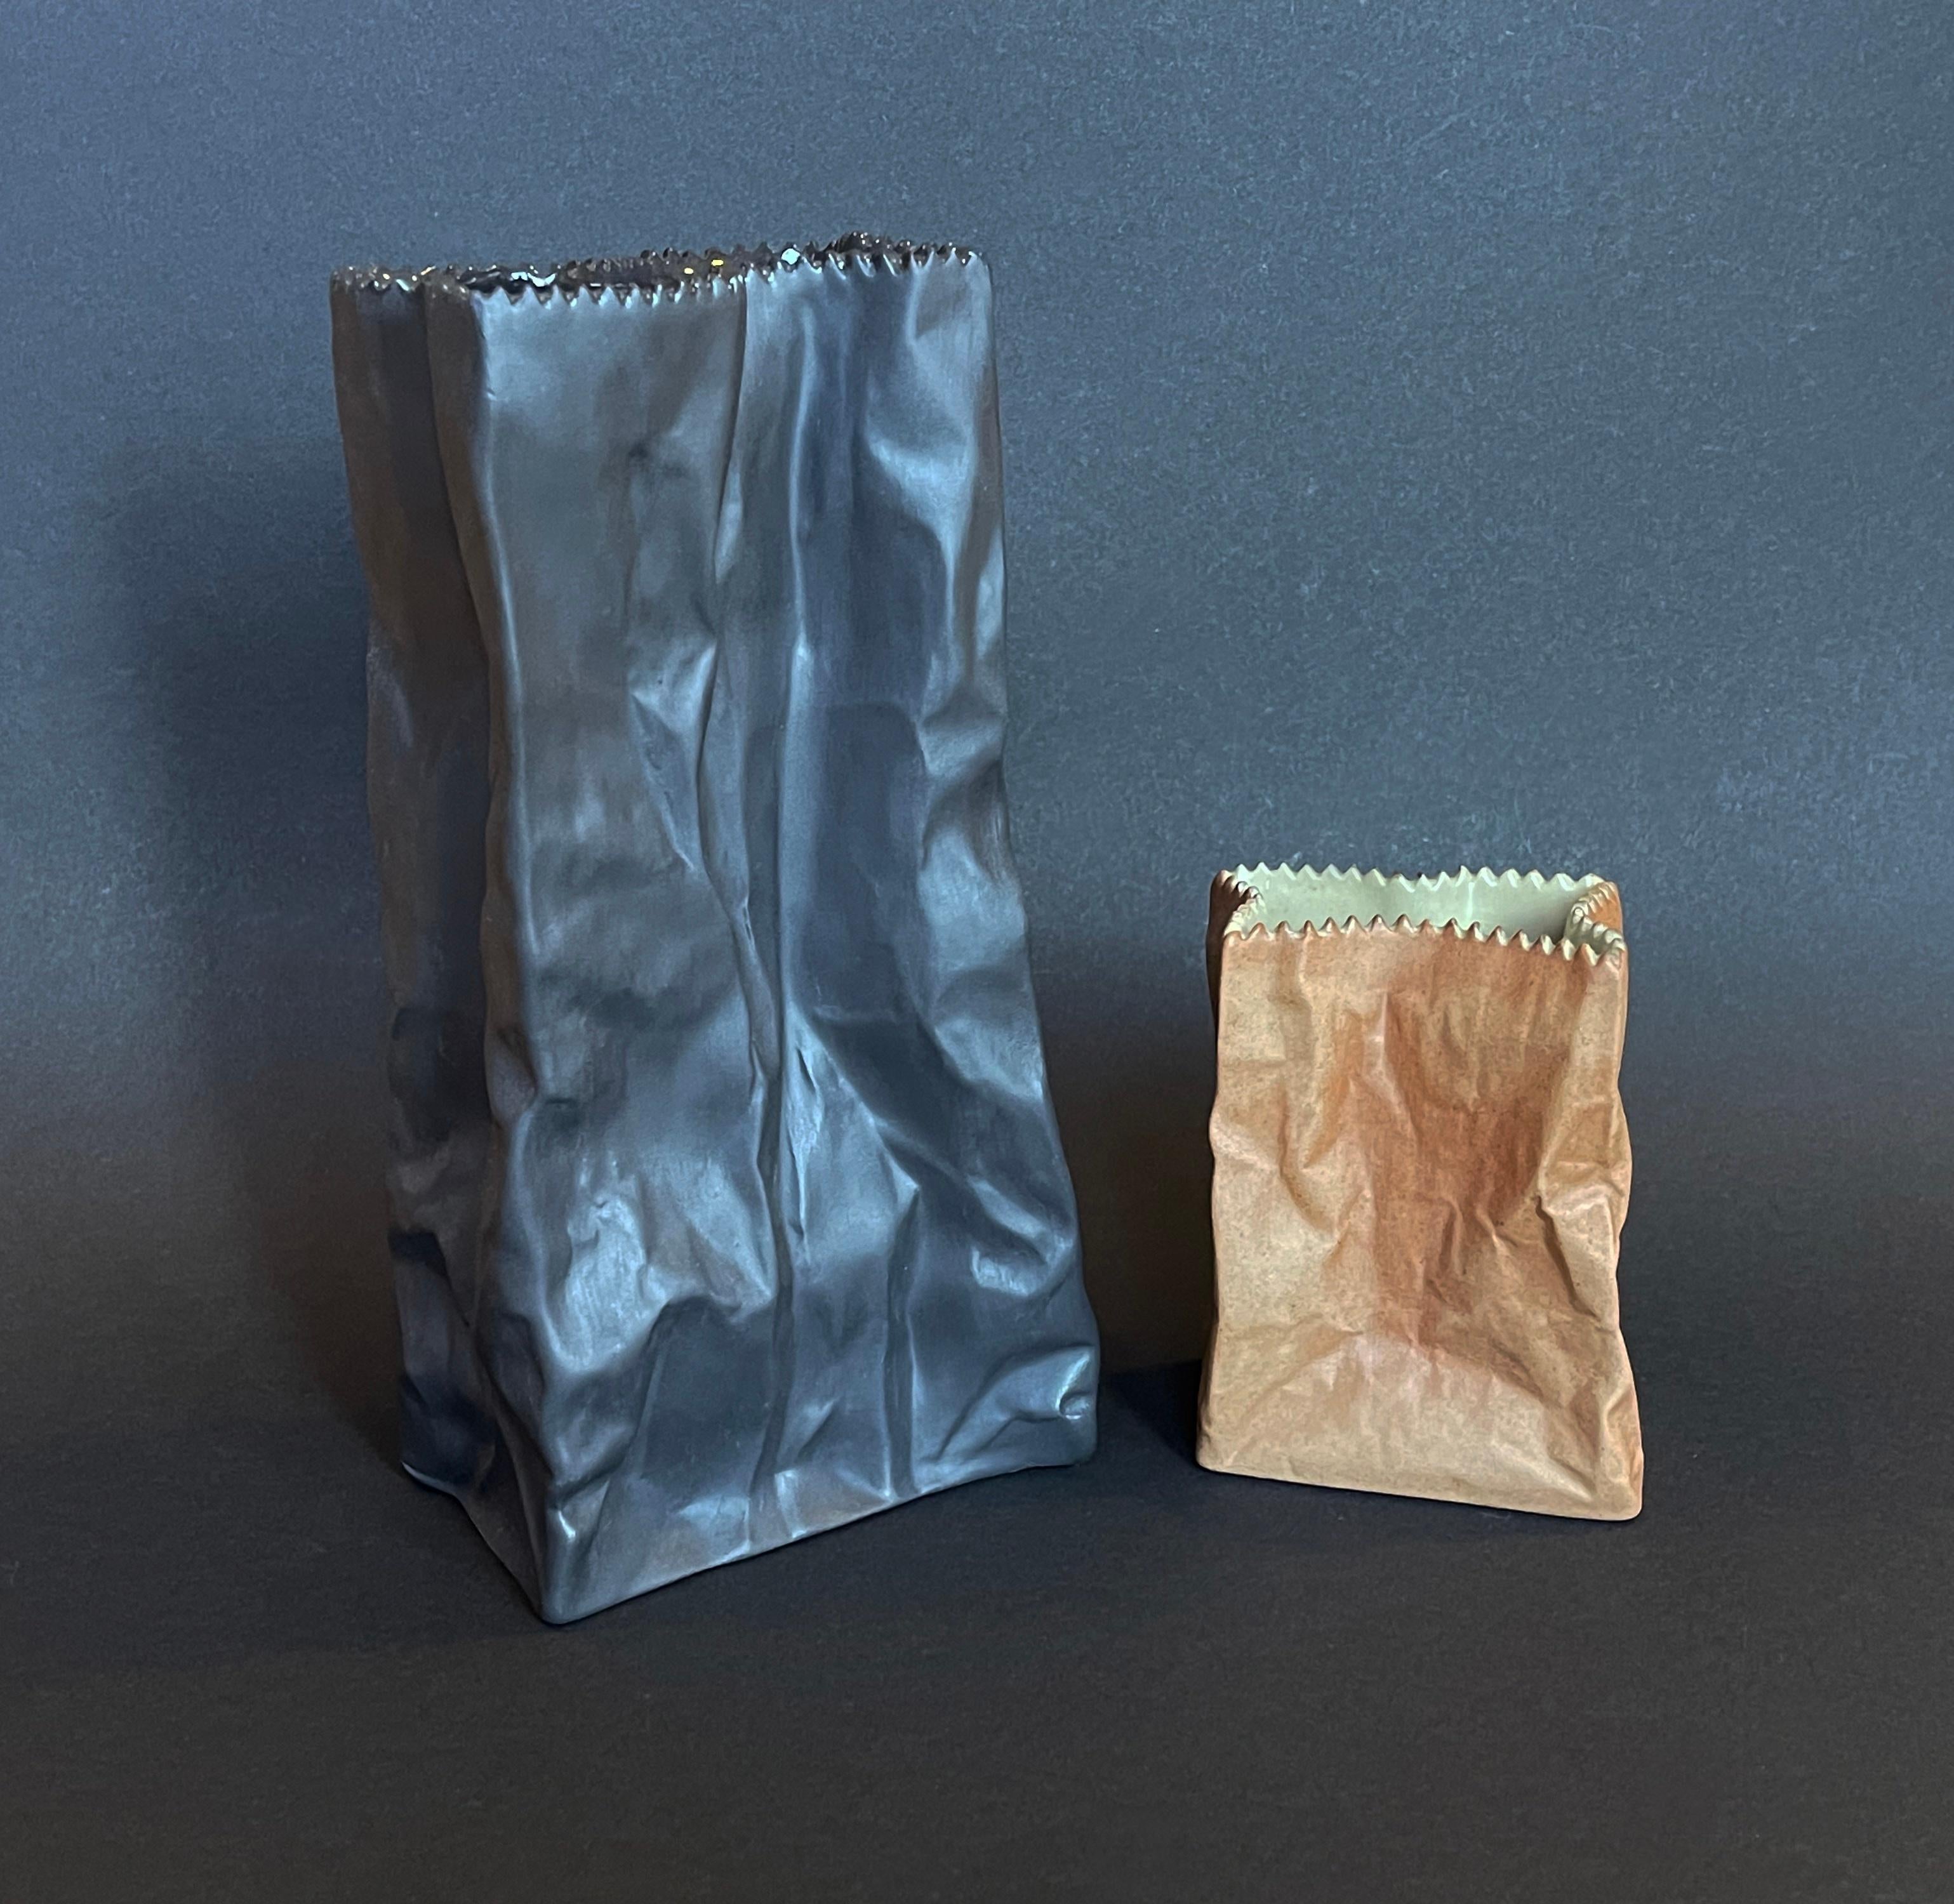 Design-Vintage-Klassiker von Tapio für Rosenthal, Deutschland.
Satz von 2 so genannten ''Paper Bag''-Vasen, die braune, 1977 ca..
Sie hat eine grob strukturierte braune Papiertütenoberfläche und eine graue Innenseite.
Die schwarze Vase ist in dieser